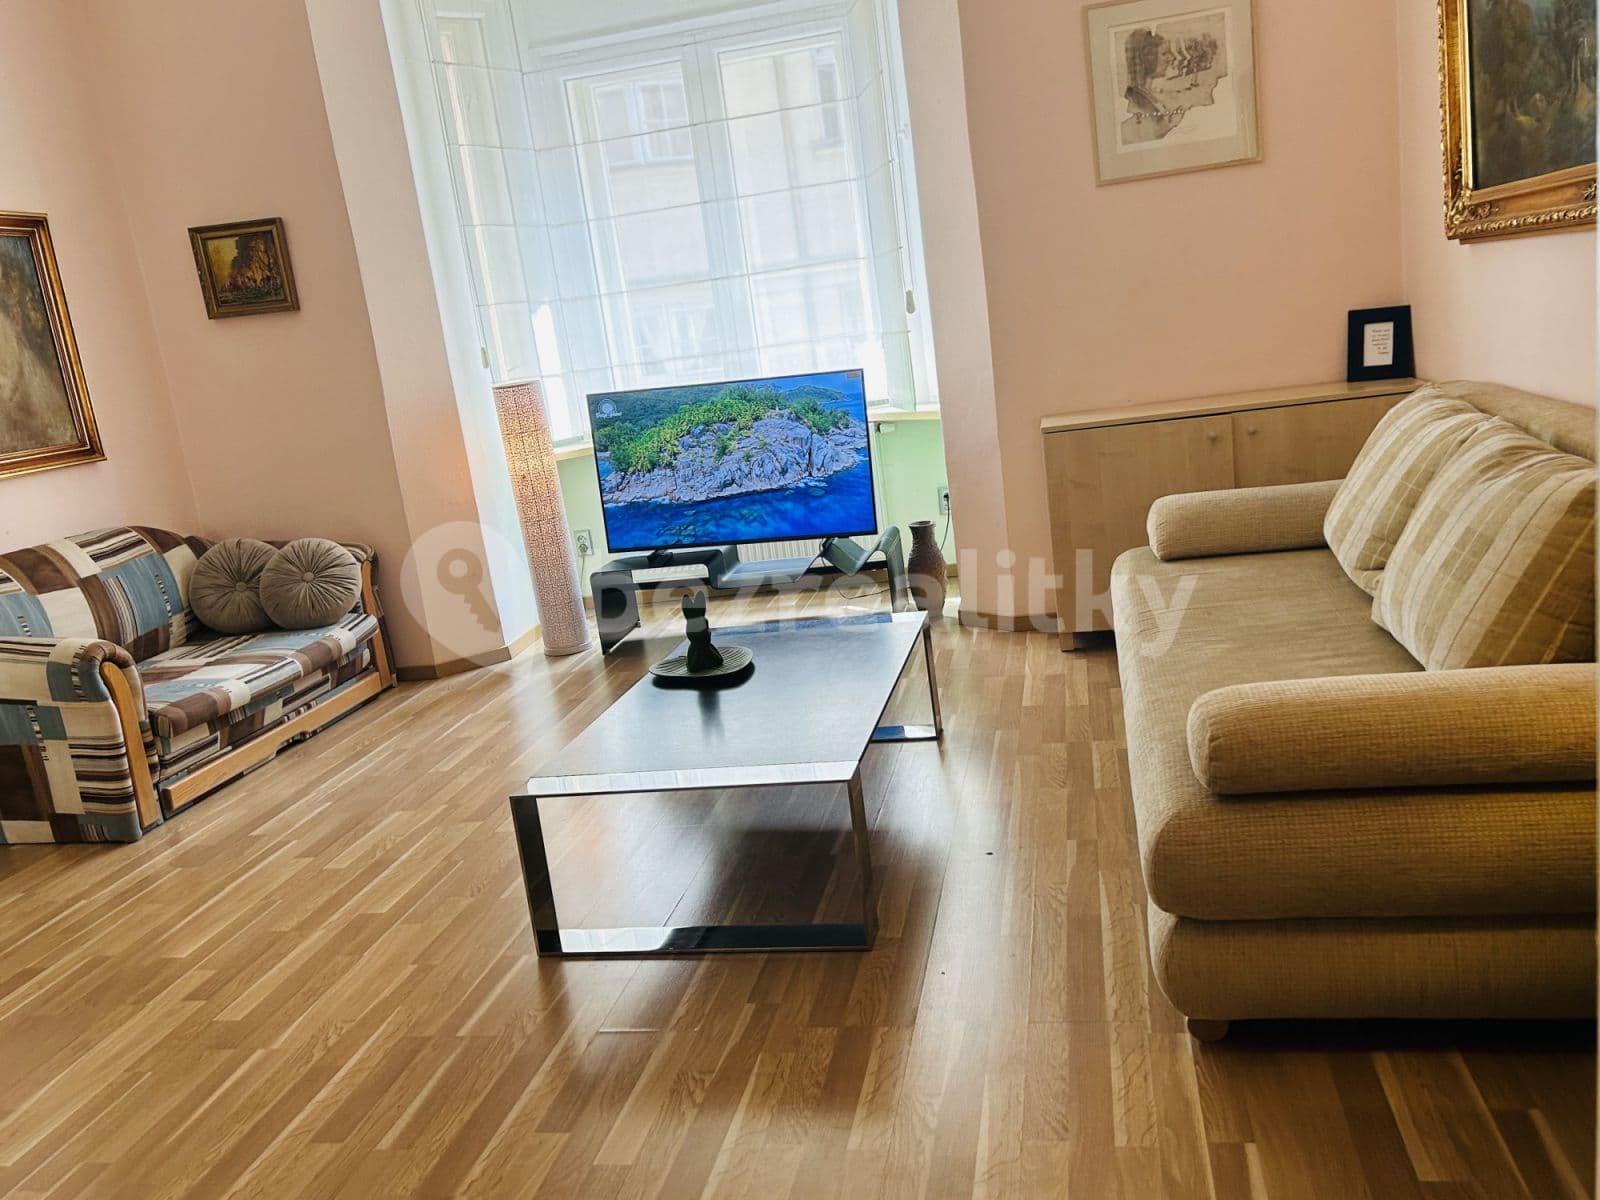 2 bedroom flat to rent, 80 m², Široká, Prague, Prague